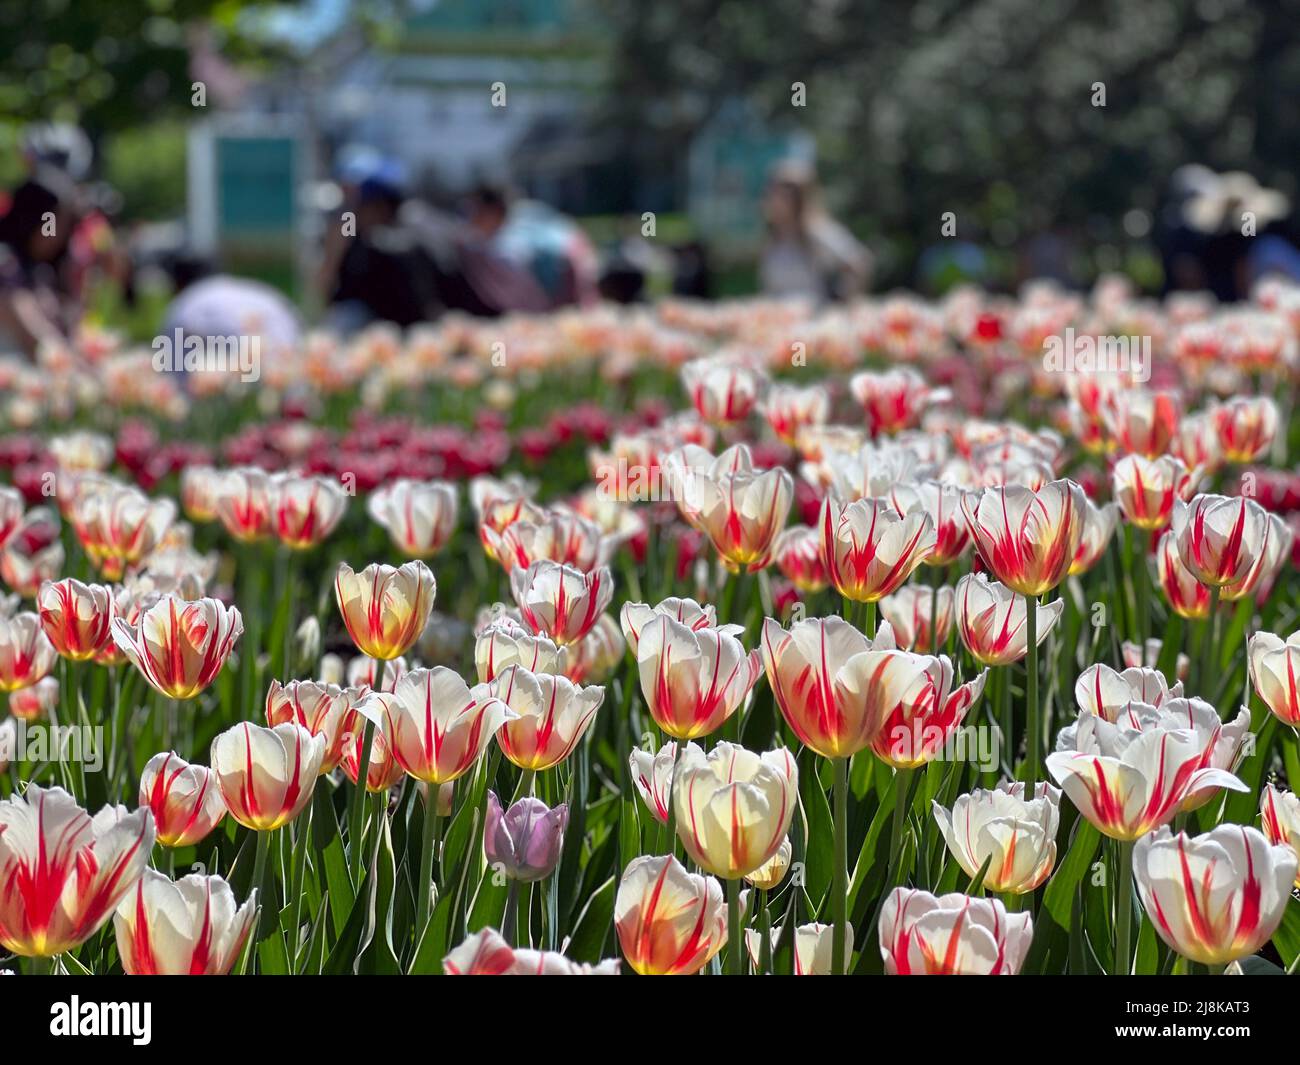 Besucher besuchen das Ottawa Tulip Festival, eine jährliche Veranstaltung in Ontario, Kanada. Stockfoto